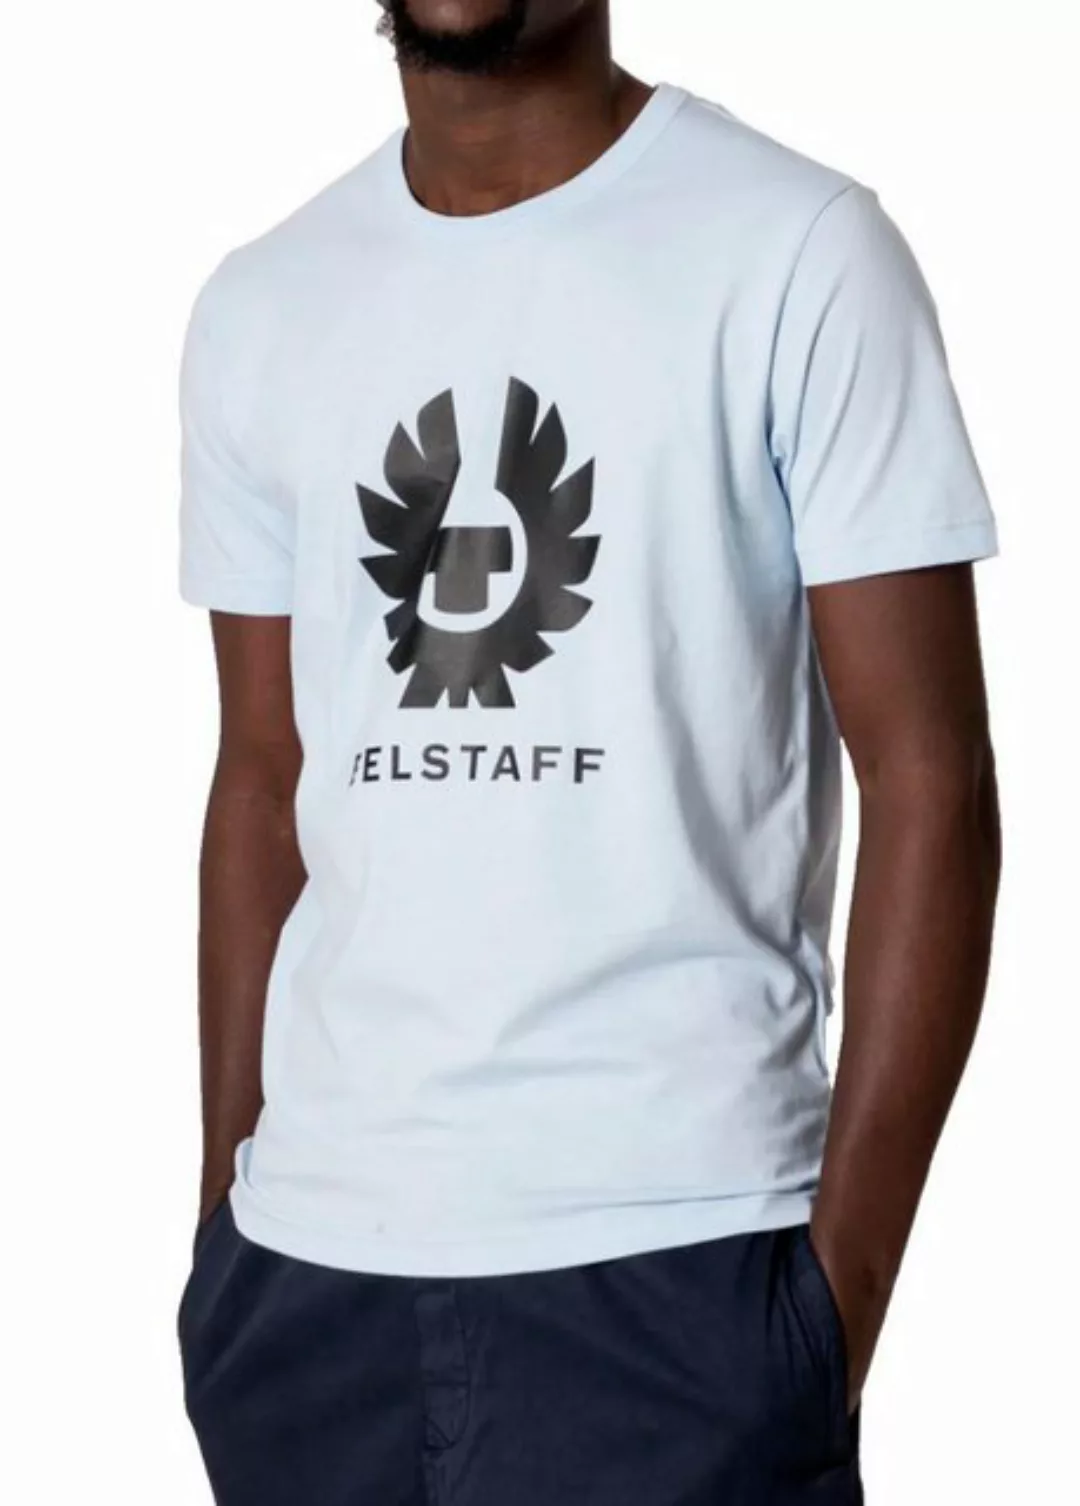 Belstaff T-Shirt T-Shirt Phoenix Retro Logo Tee Regular Fit Shirt Großes Ph günstig online kaufen